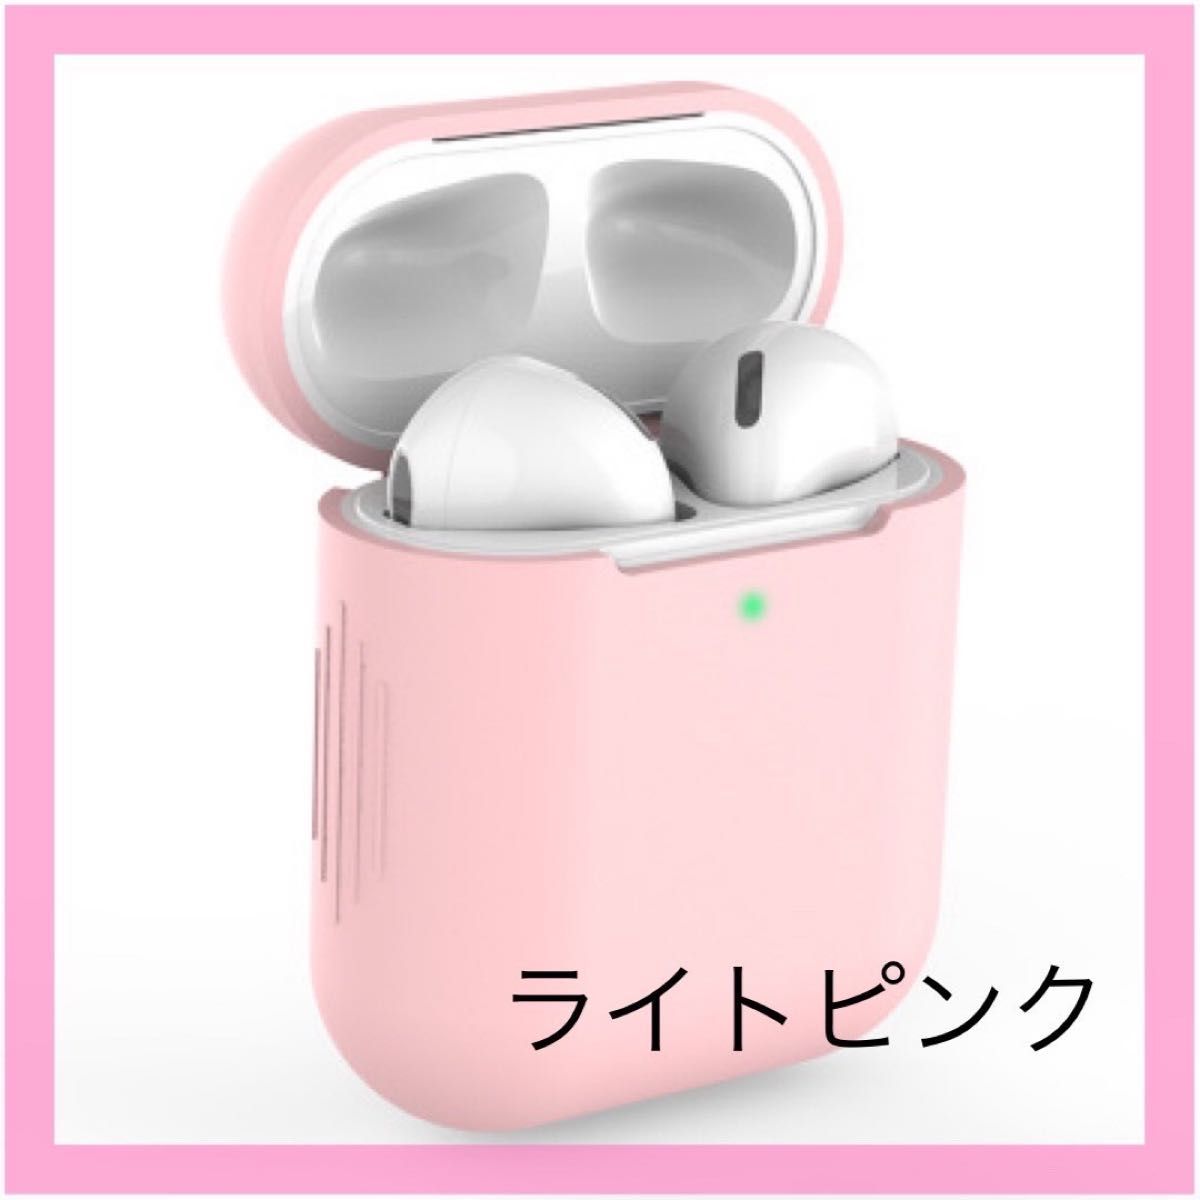 AirPodsケース ピンク シリコン 充電カバー 第1/2世代 エアポッズ イヤホンケースカバー